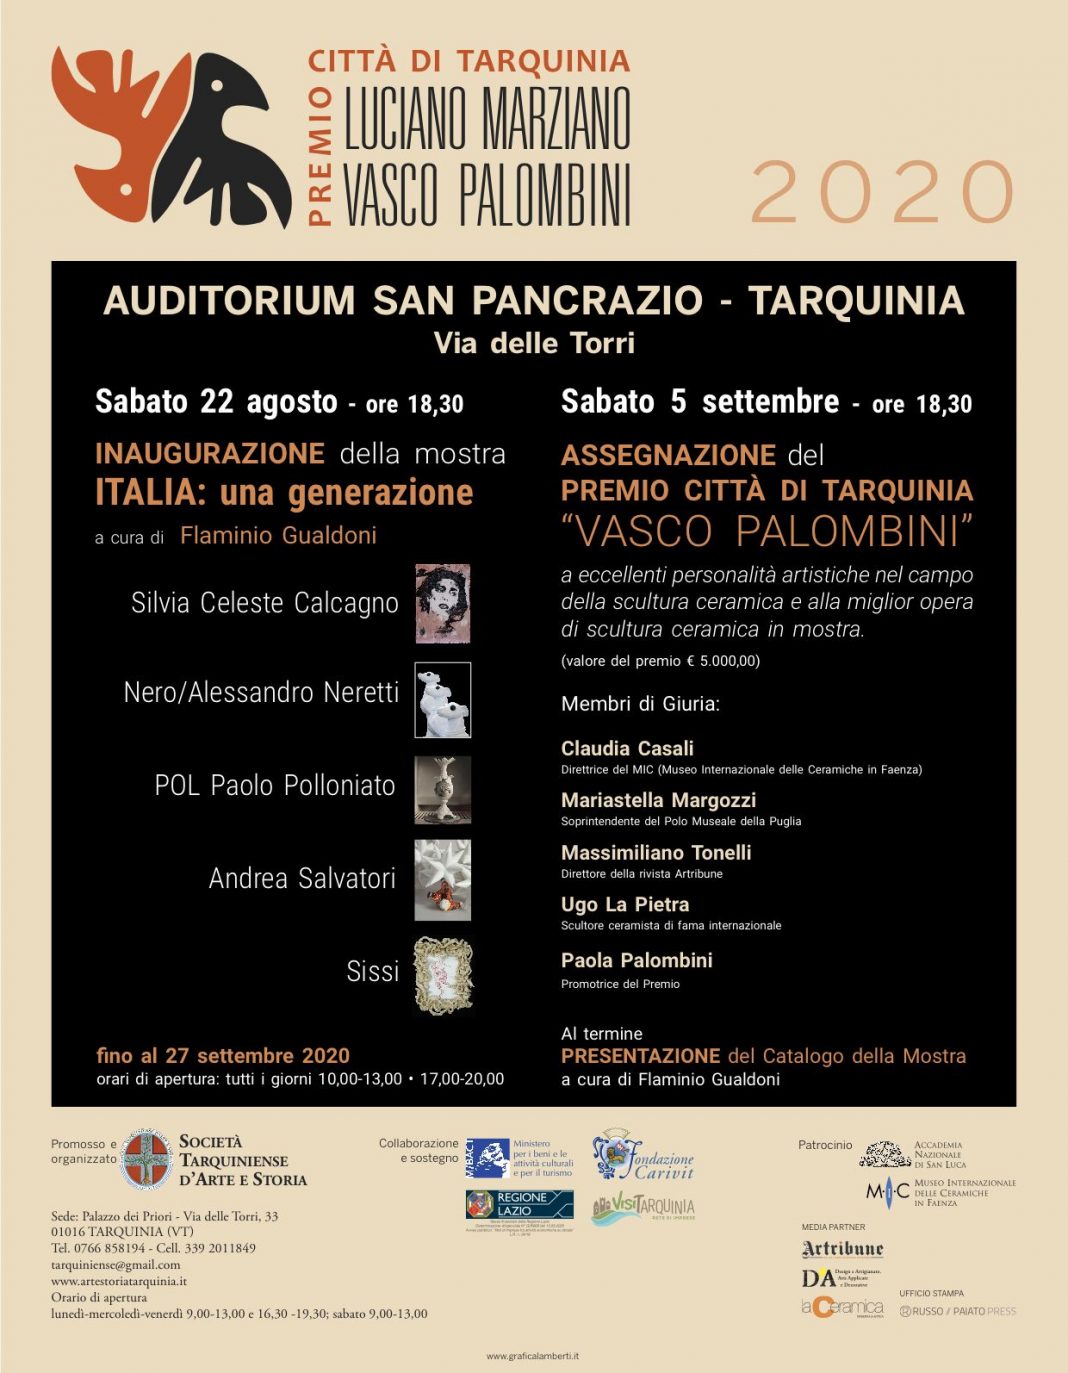 Italia: una generazione. Premio Città di Tarquinia Vasco Palombini 2020https://www.exibart.com/repository/media/formidable/11/INVITO-WEB-1-1068x1373.jpg